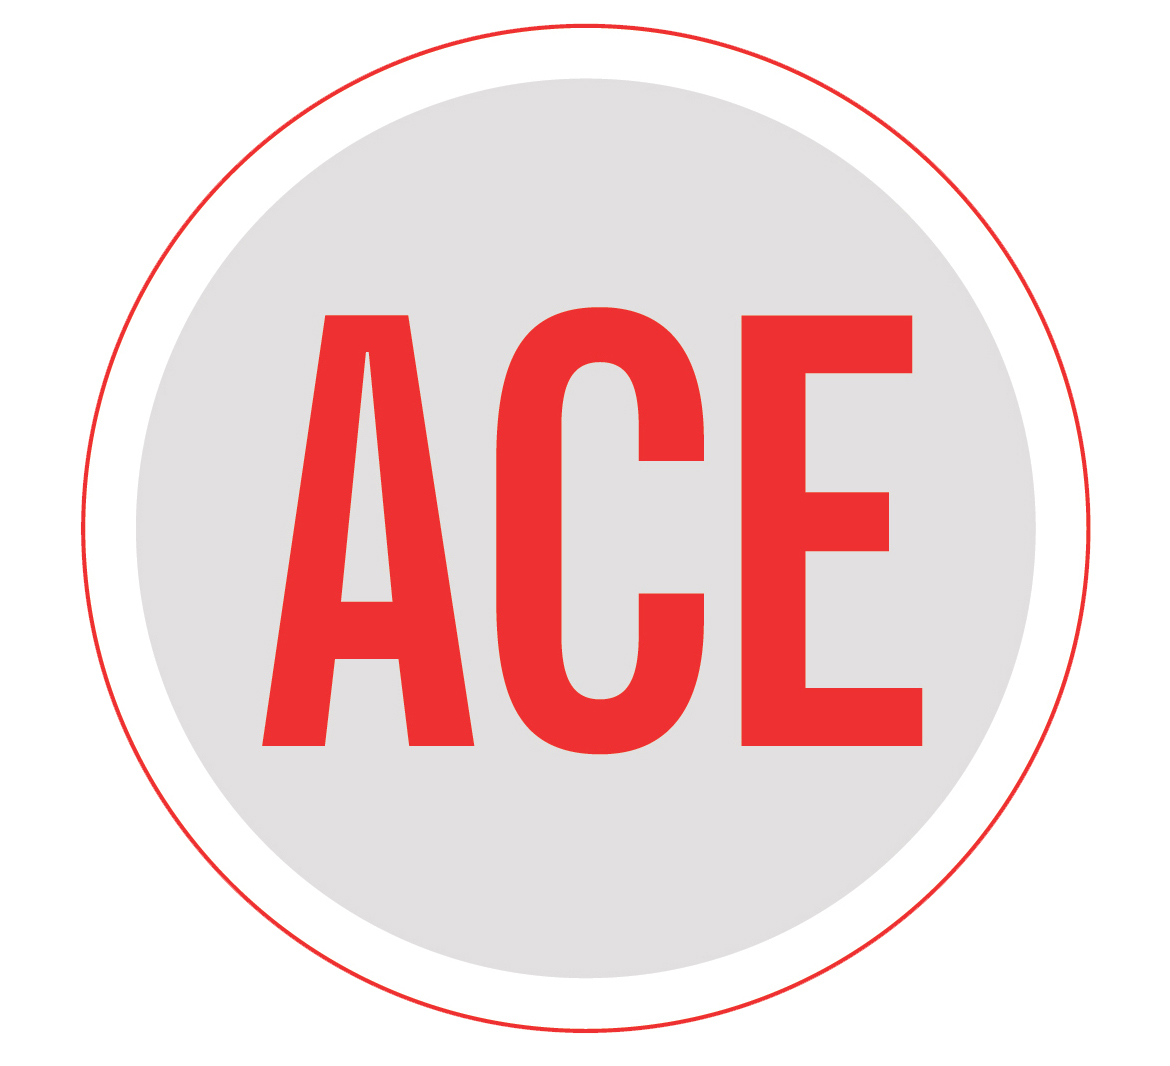  Ace  Logos 